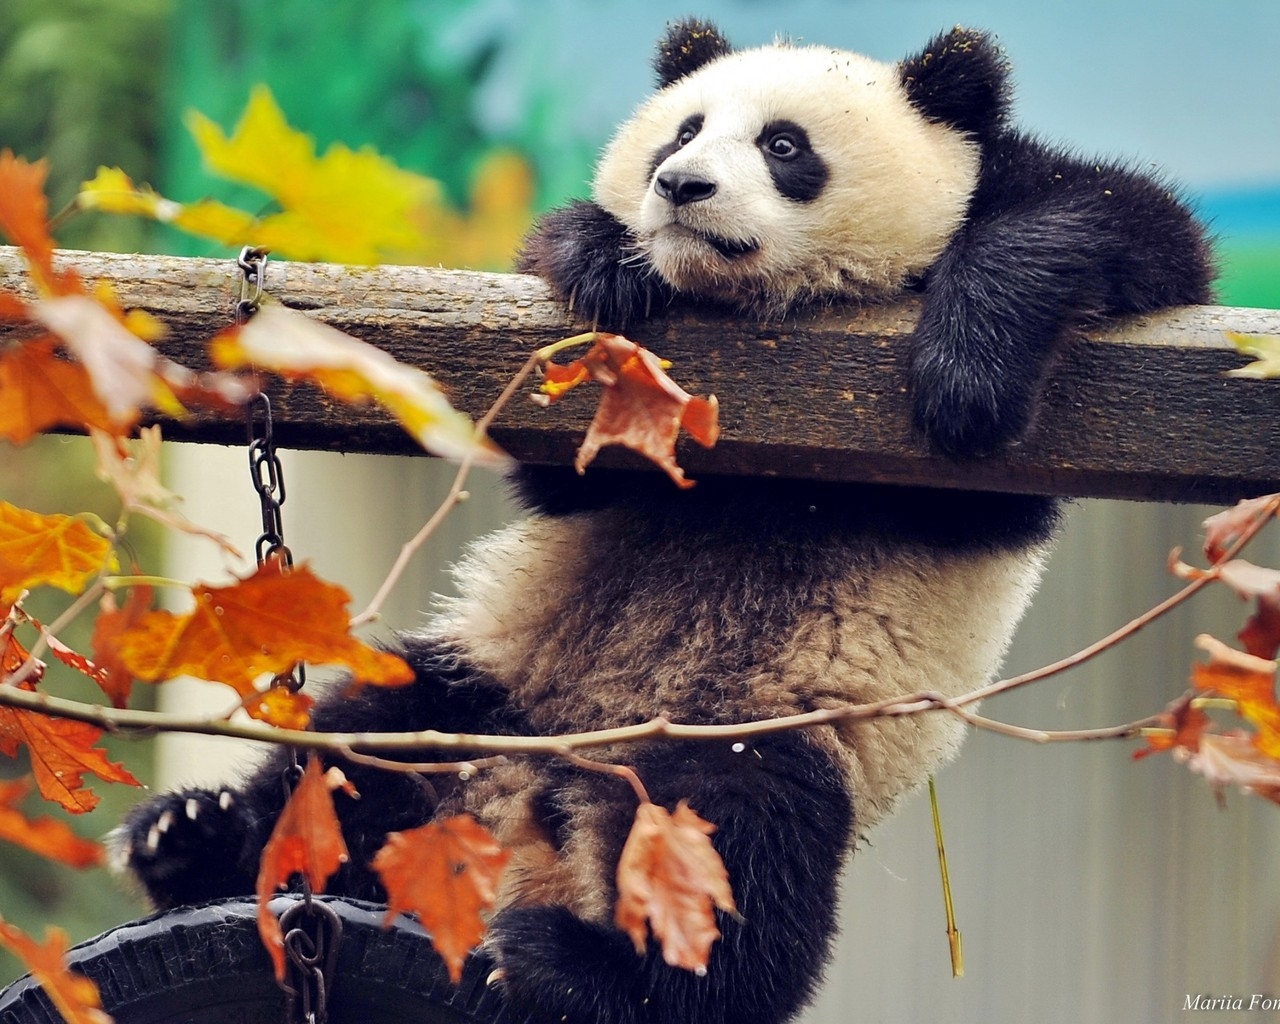 Cute Panda Climbing for 1280 x 1024 resolution